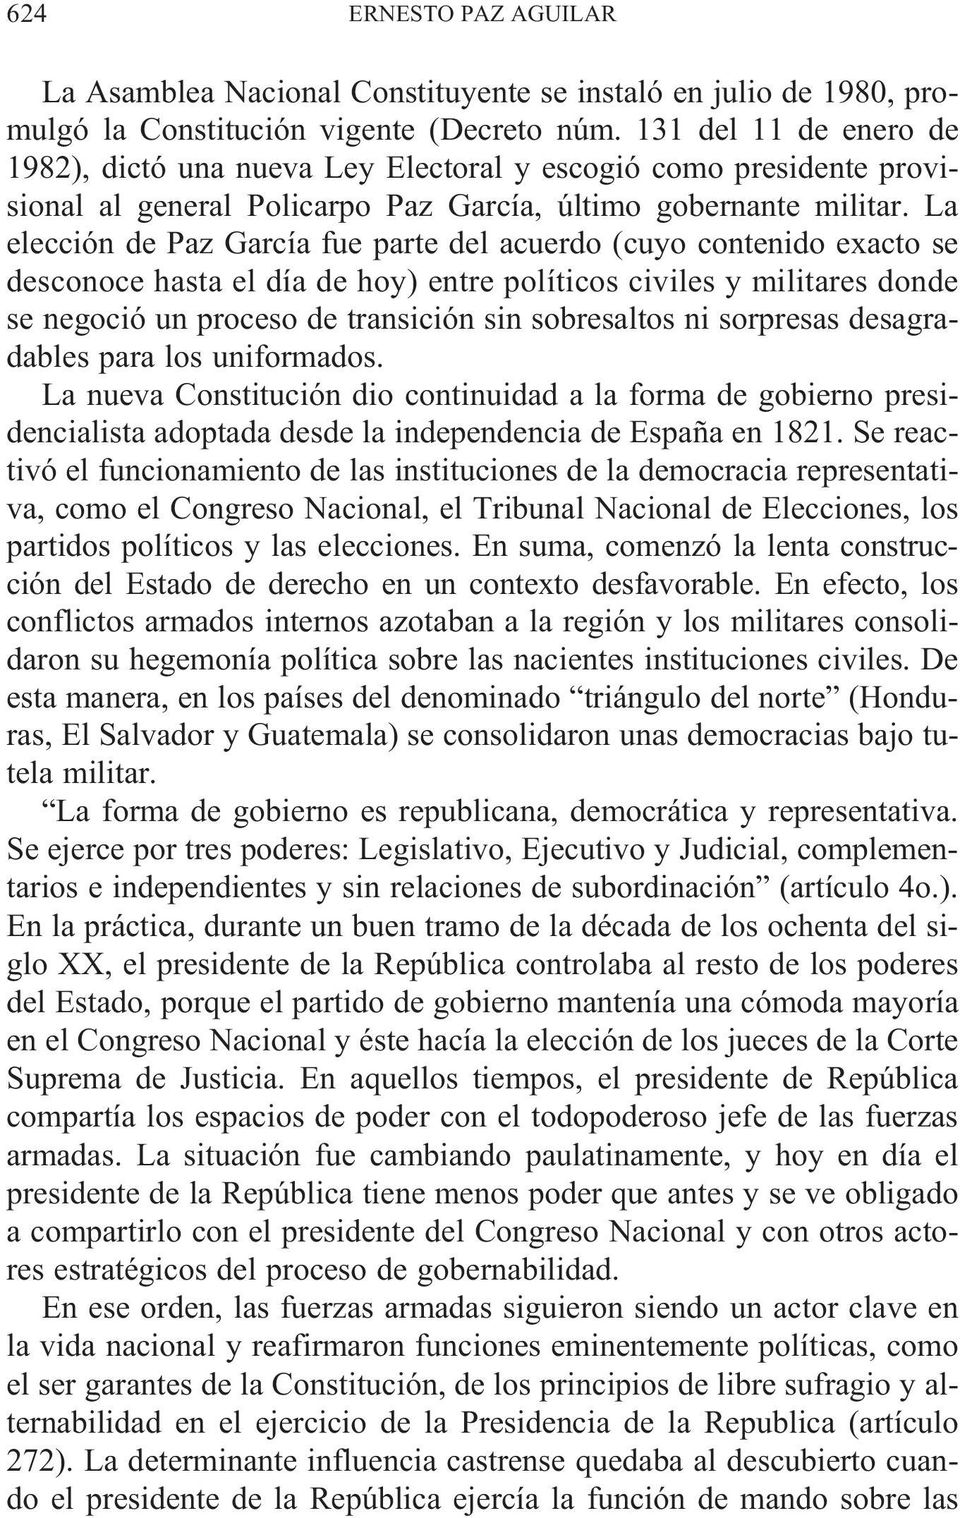 La elección de Paz García fue parte del acuerdo (cuyo contenido exacto se desconoce hasta el día de hoy) entre políticos civiles y militares donde se negoció un proceso de transición sin sobresaltos